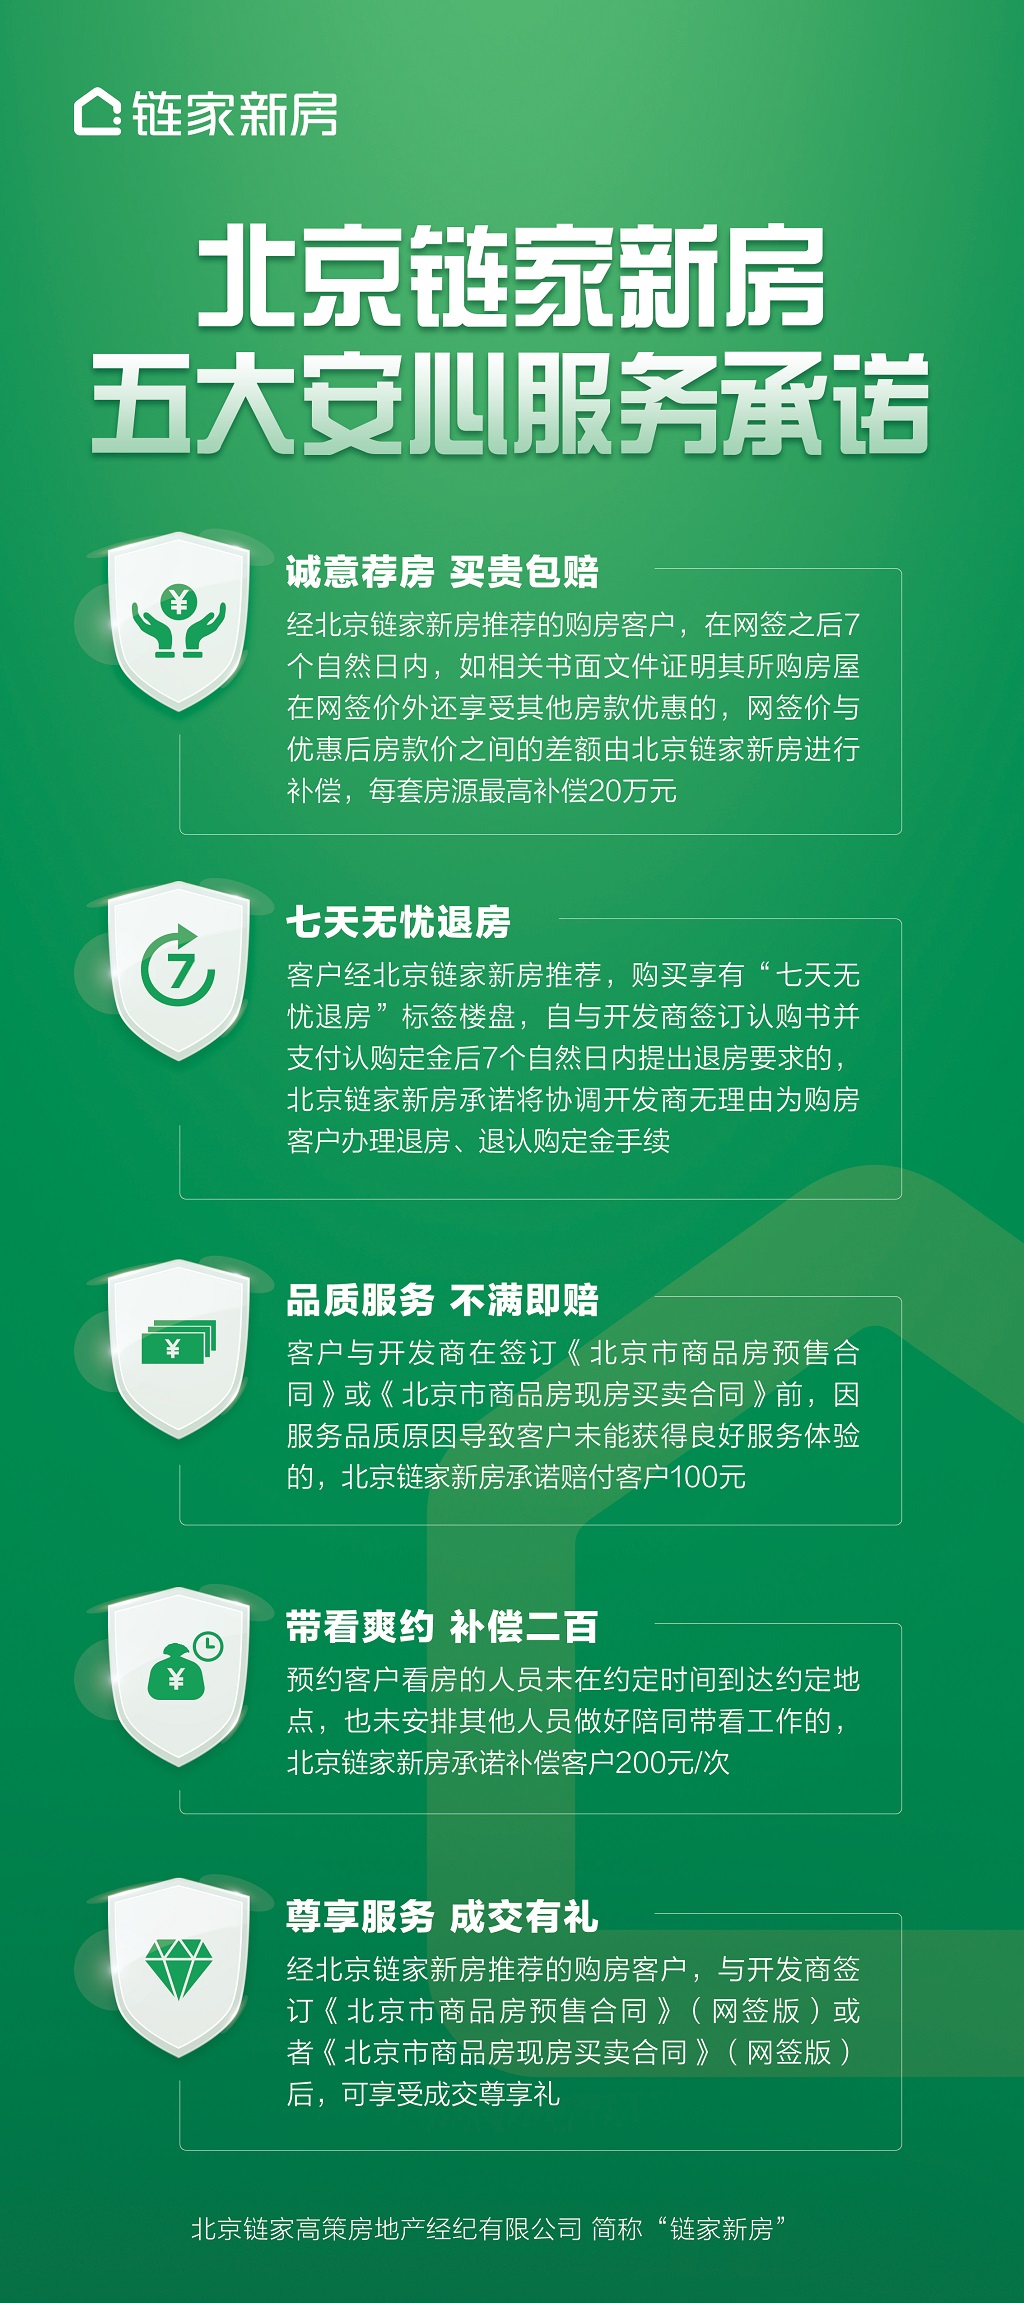 北京链家新房推出五大安心服务承诺 升级新房交易保障